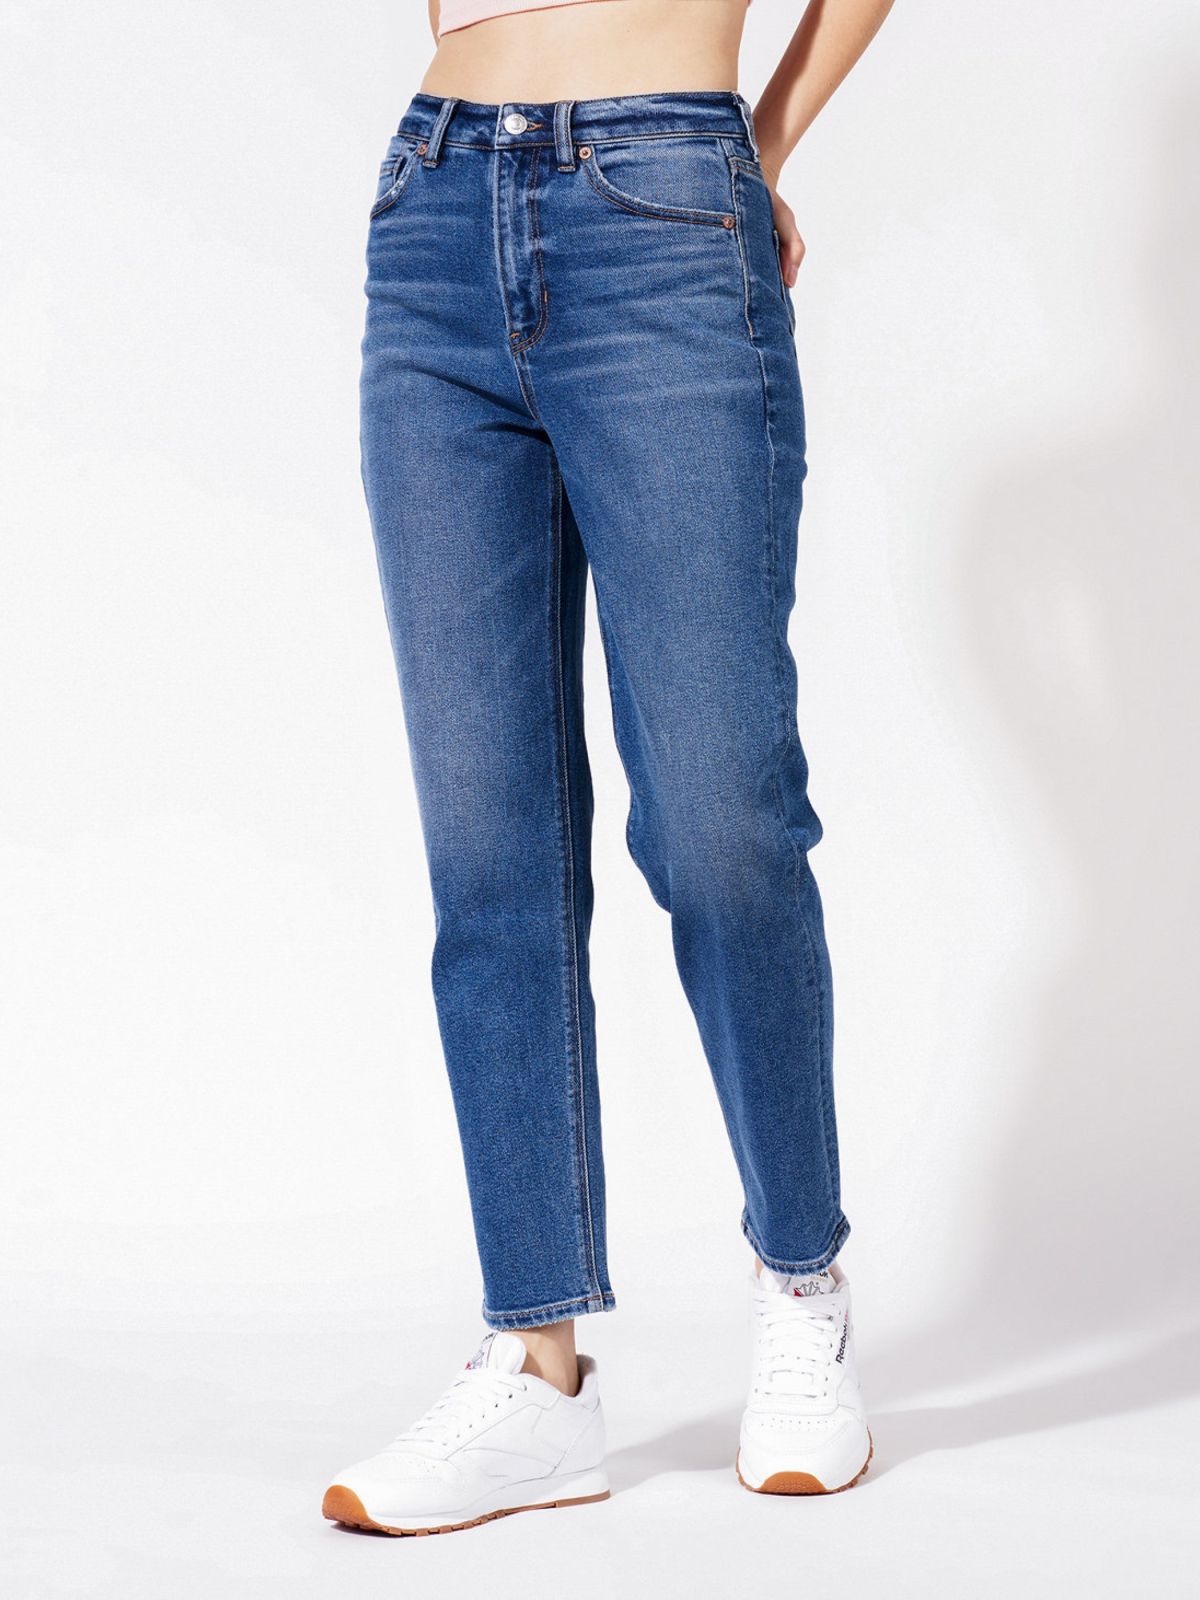  מכנסי ג'ינס ישרים בגזרת MOM של AMERICAN EAGLE